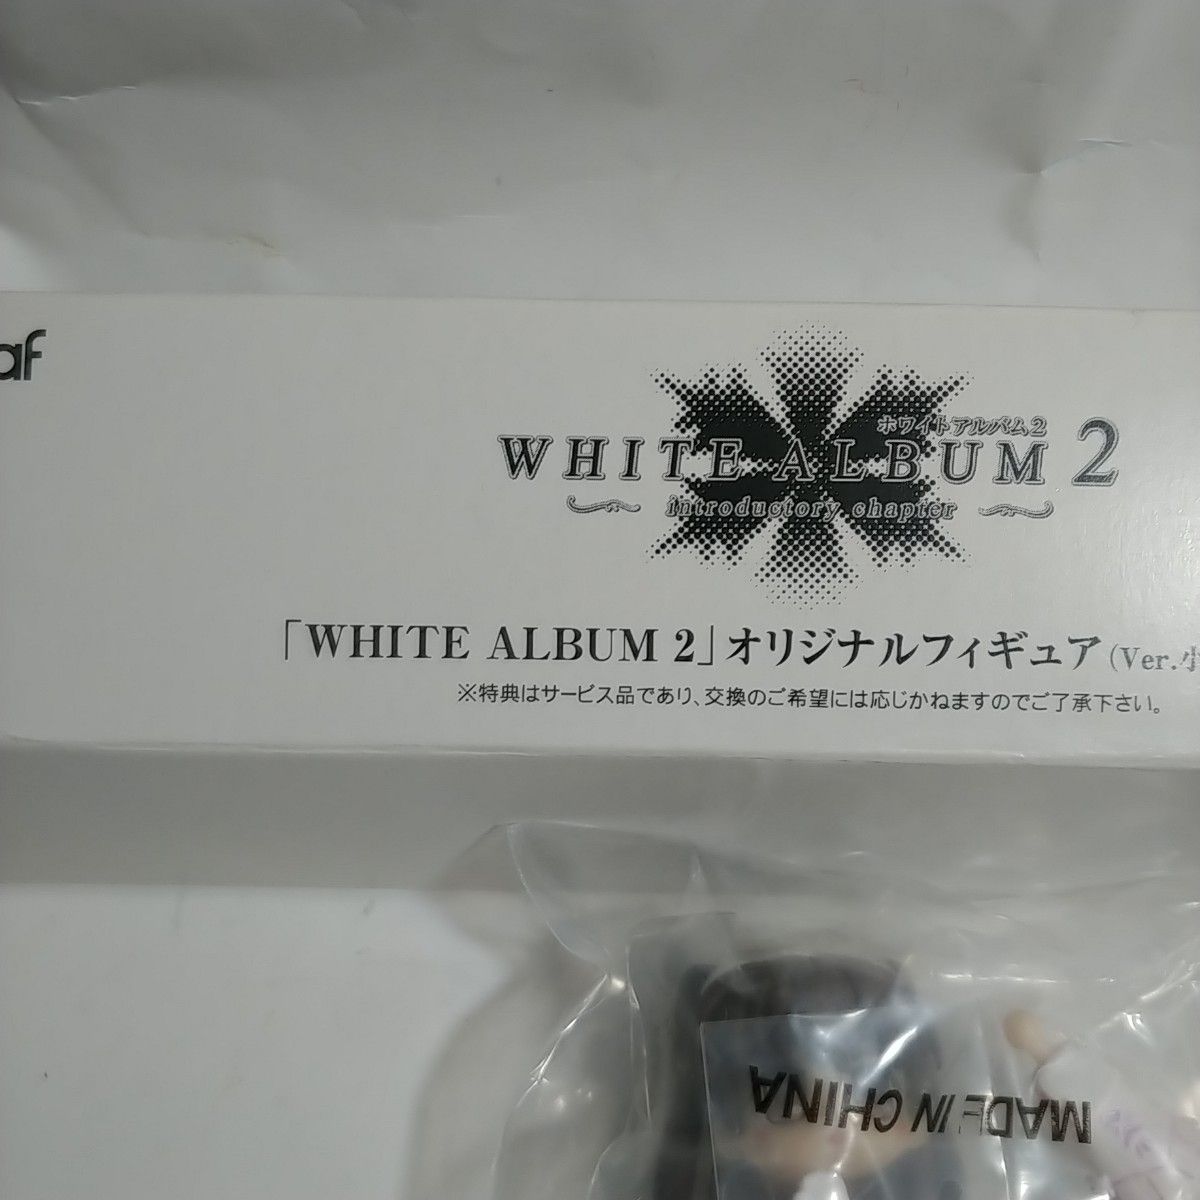 小木曽雪菜 ホワイトアルバム2 introductory  オリジナルフィギュア